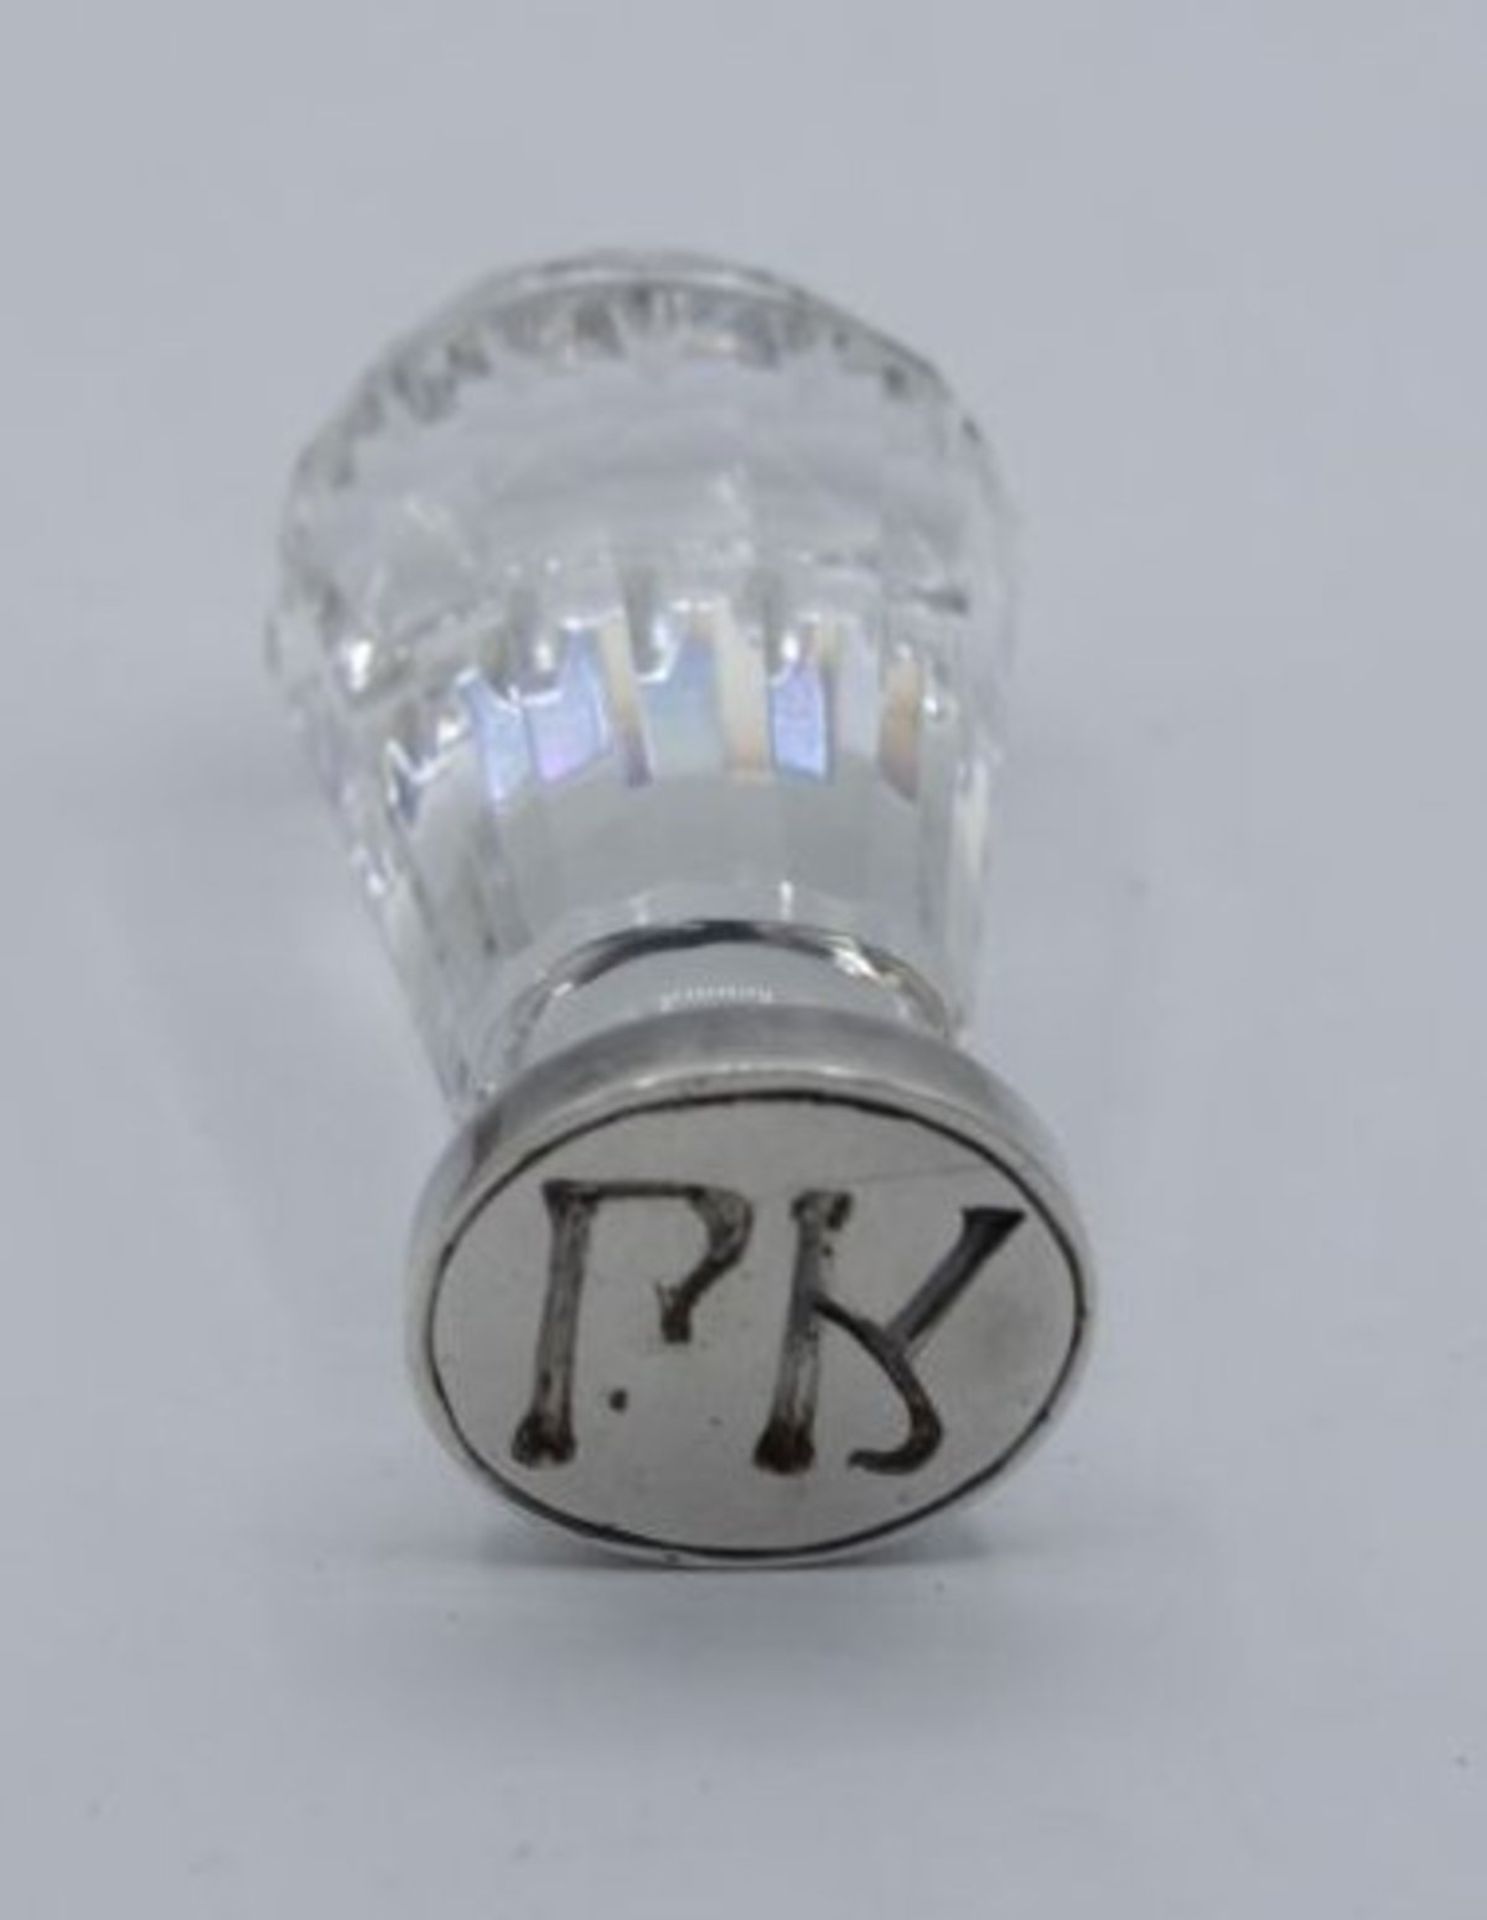 Petschaft, Kristall mit Silbermontur "PK" in kl. Jugendstilkästchen, Petschaft H-6cm, Kästchen H-3cm